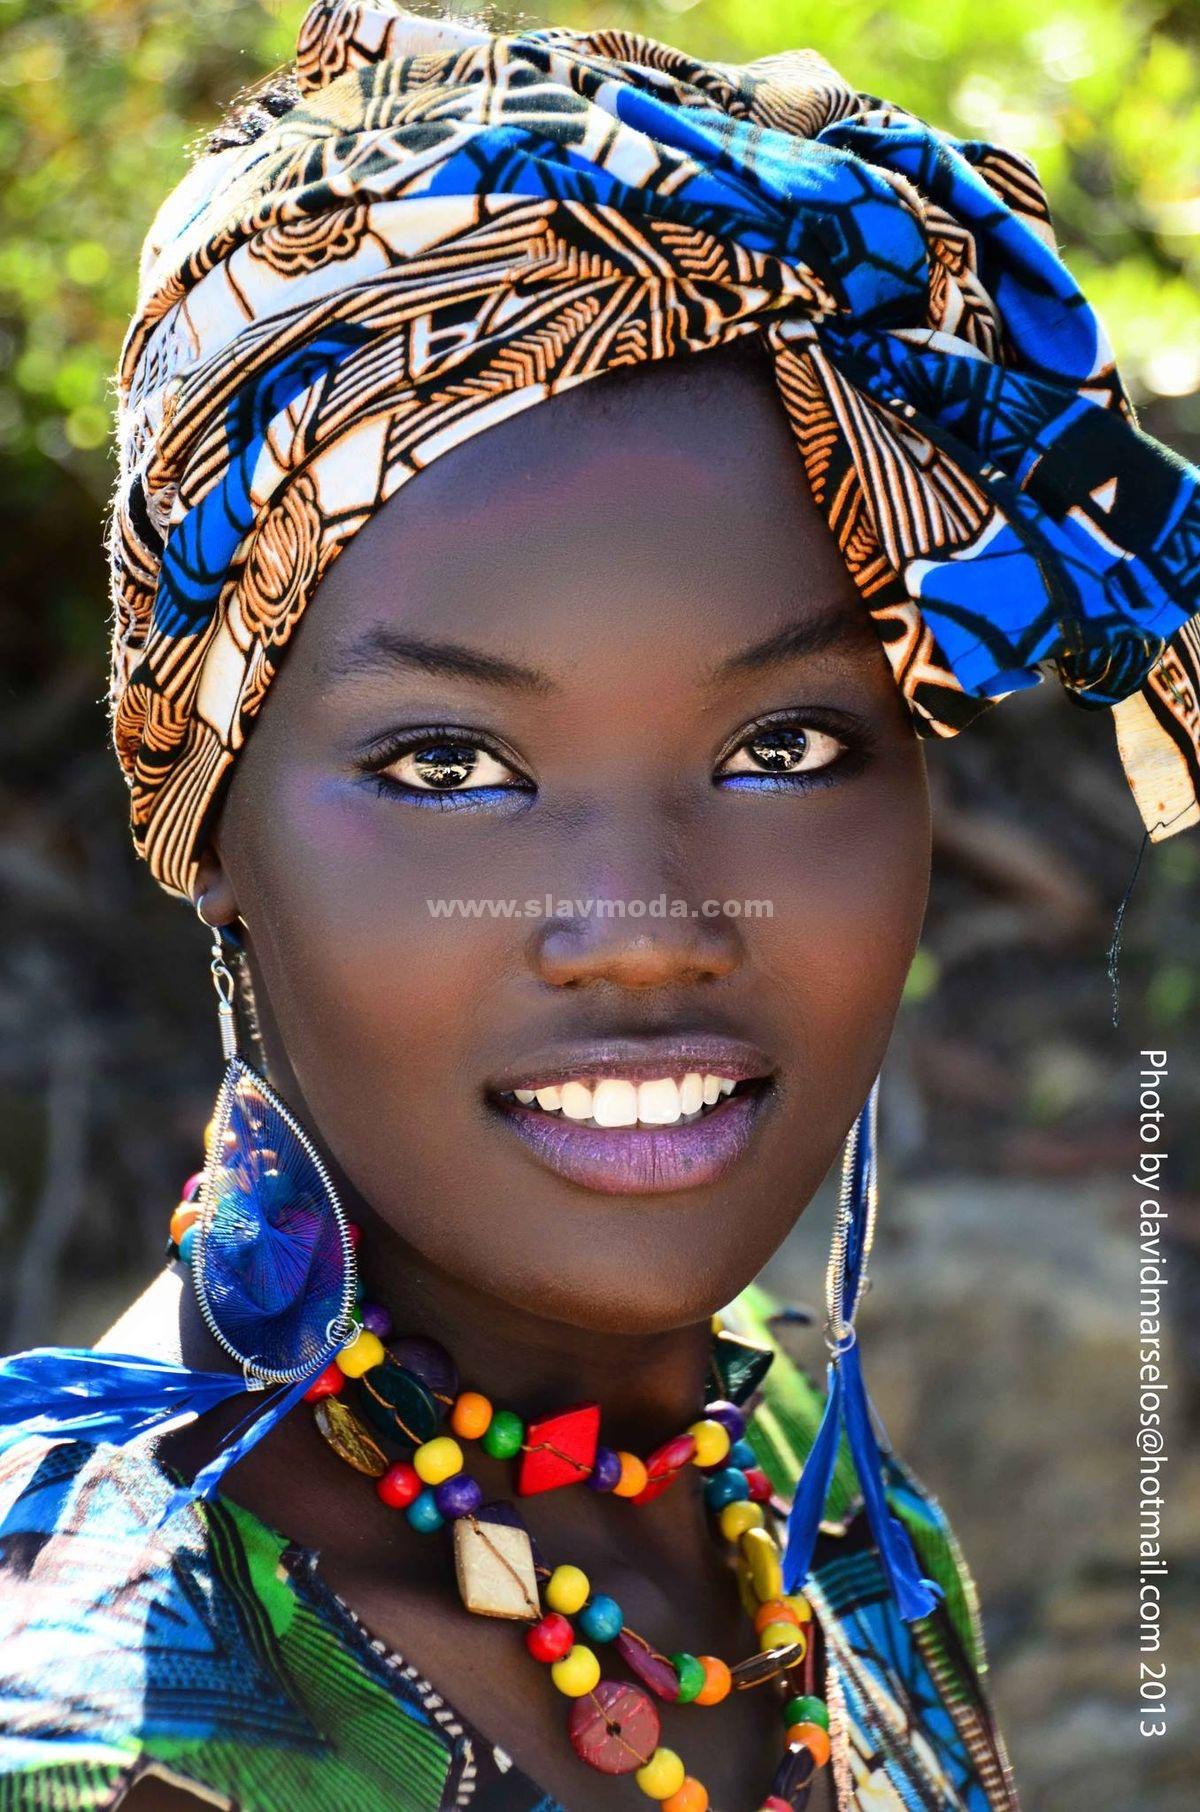 Фото африканской красавицы. История и особенности этно-стиля.